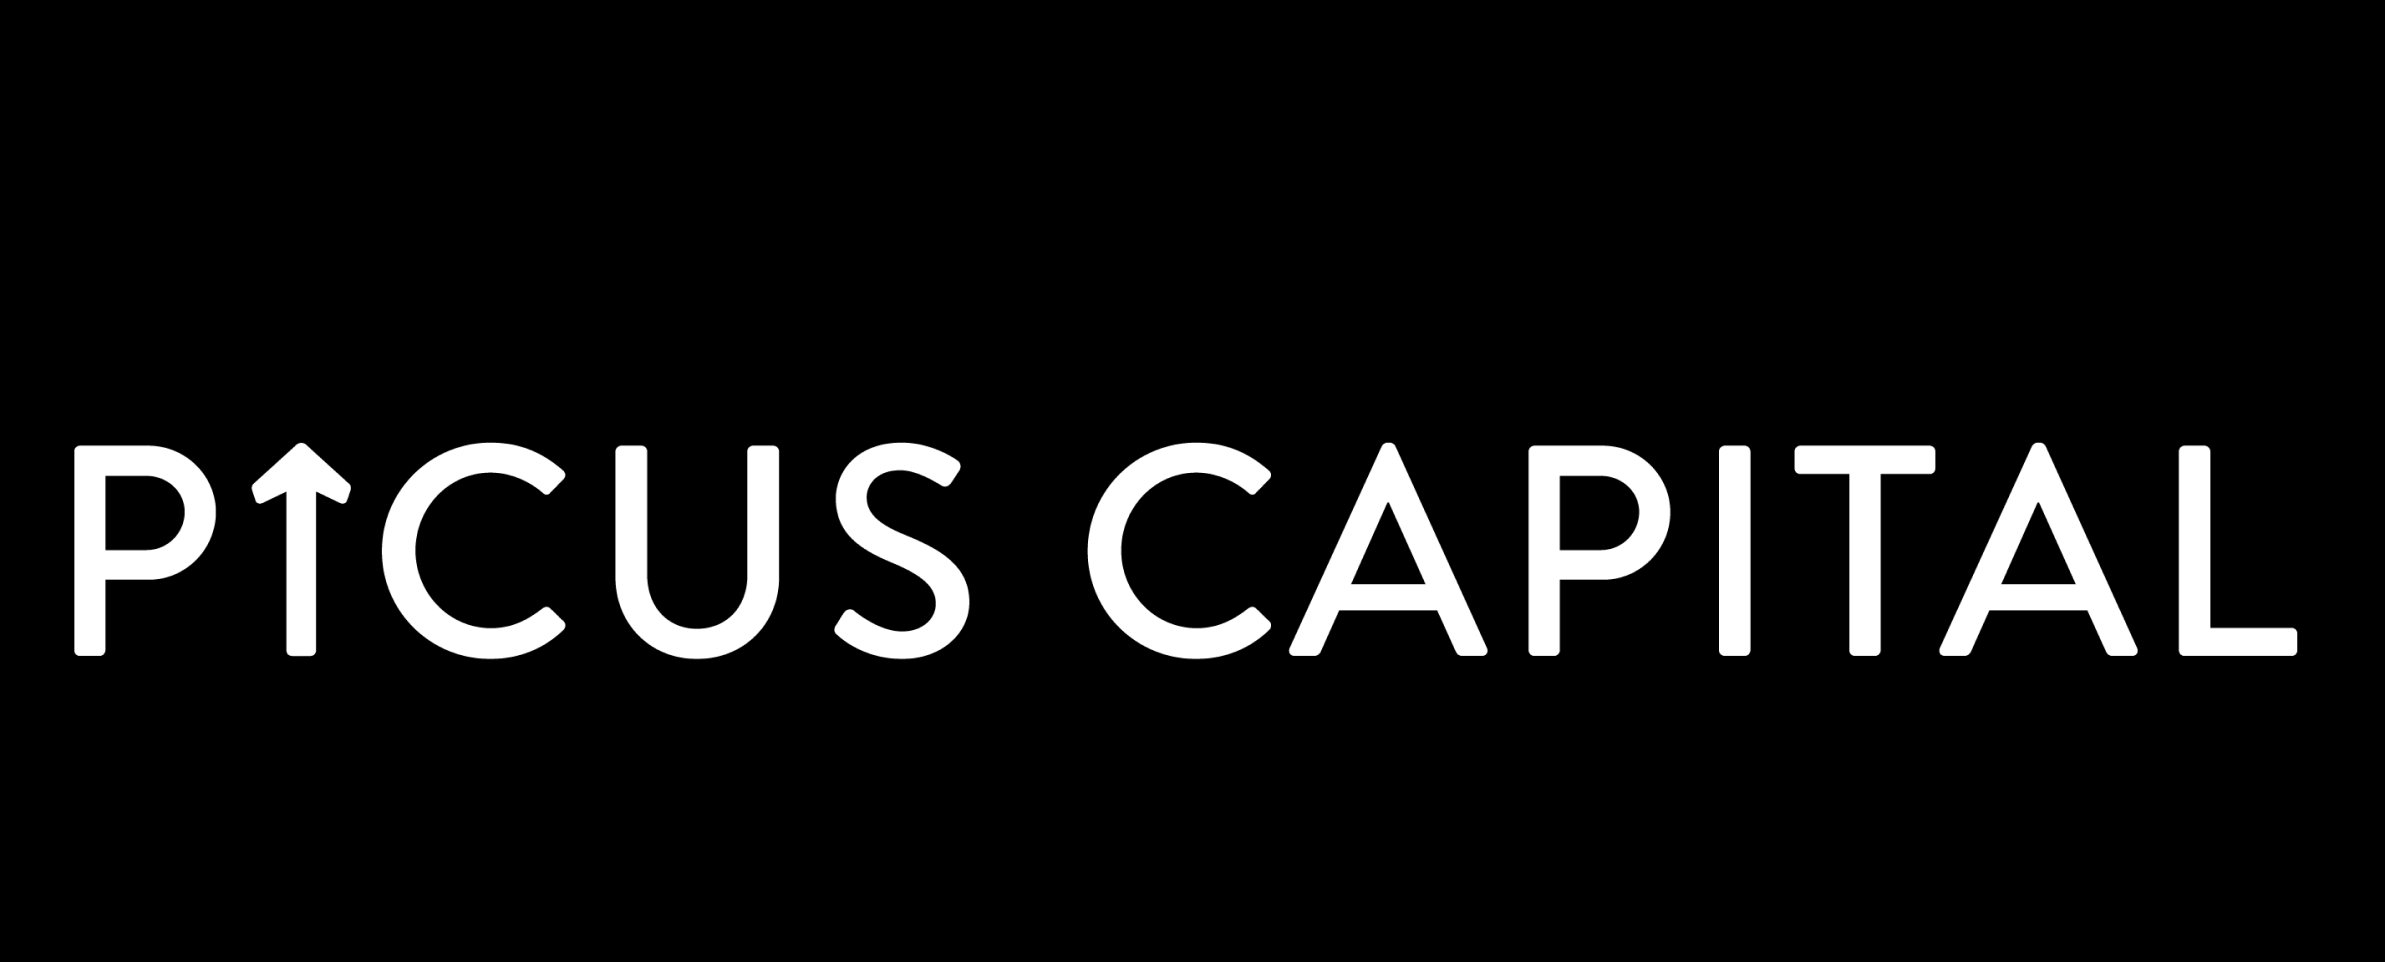 Event InvestorP Picus Capital